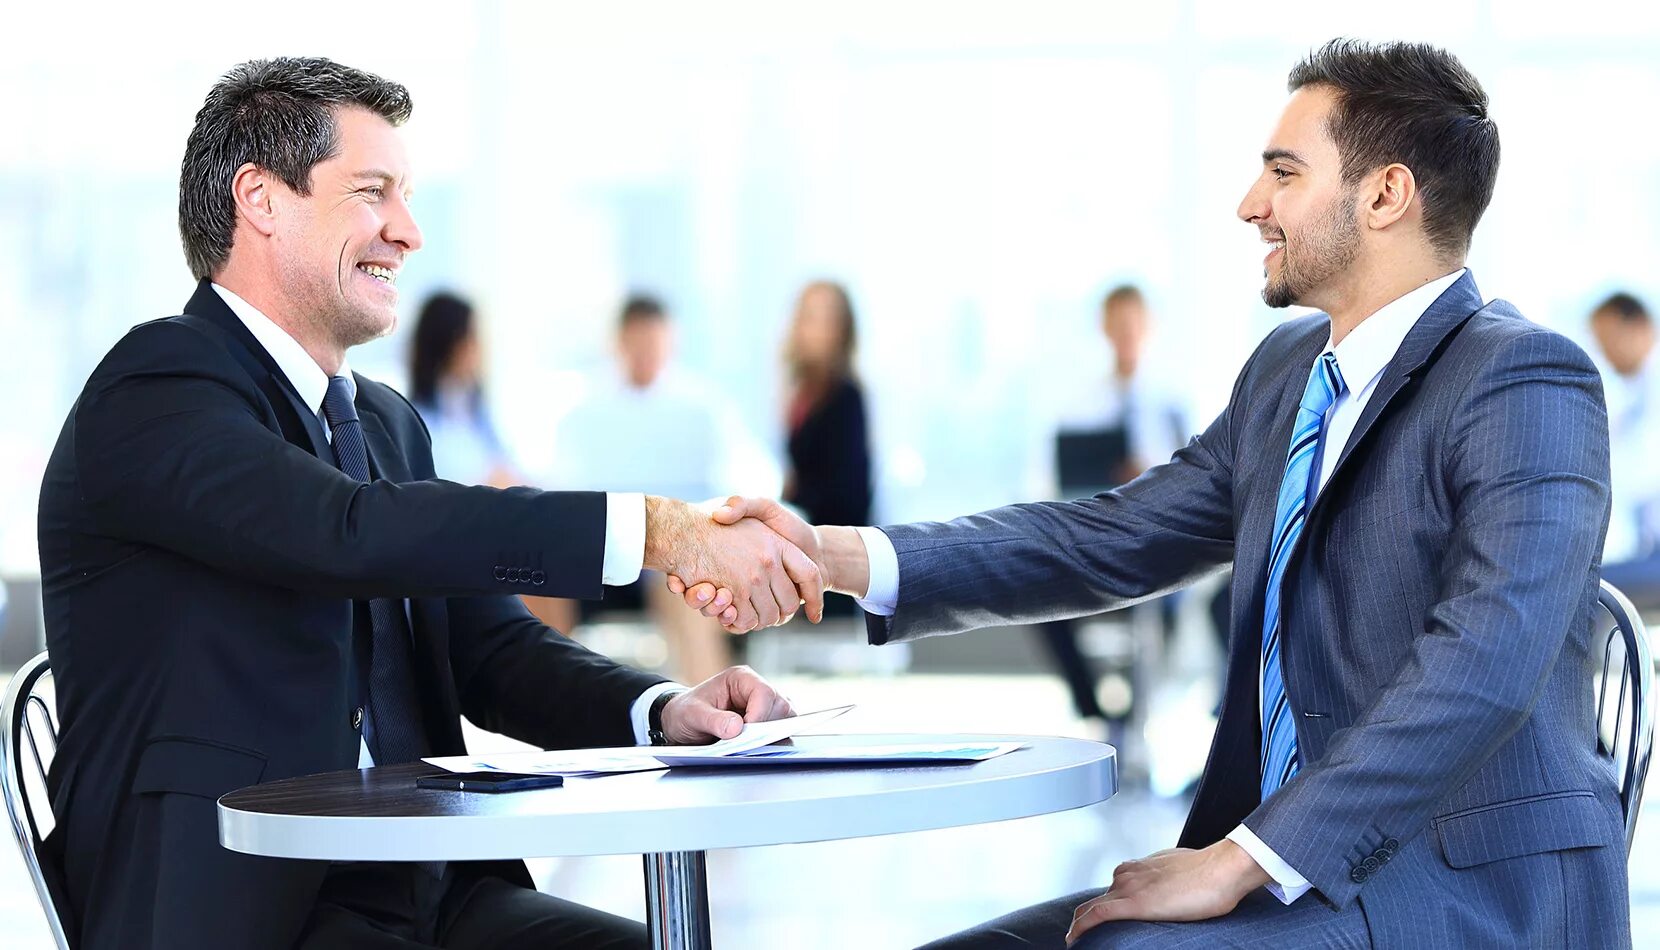 Client handshake. Деловая встреча. Переговоры. Рукопожатие бизнесменов. Деловой этикет.